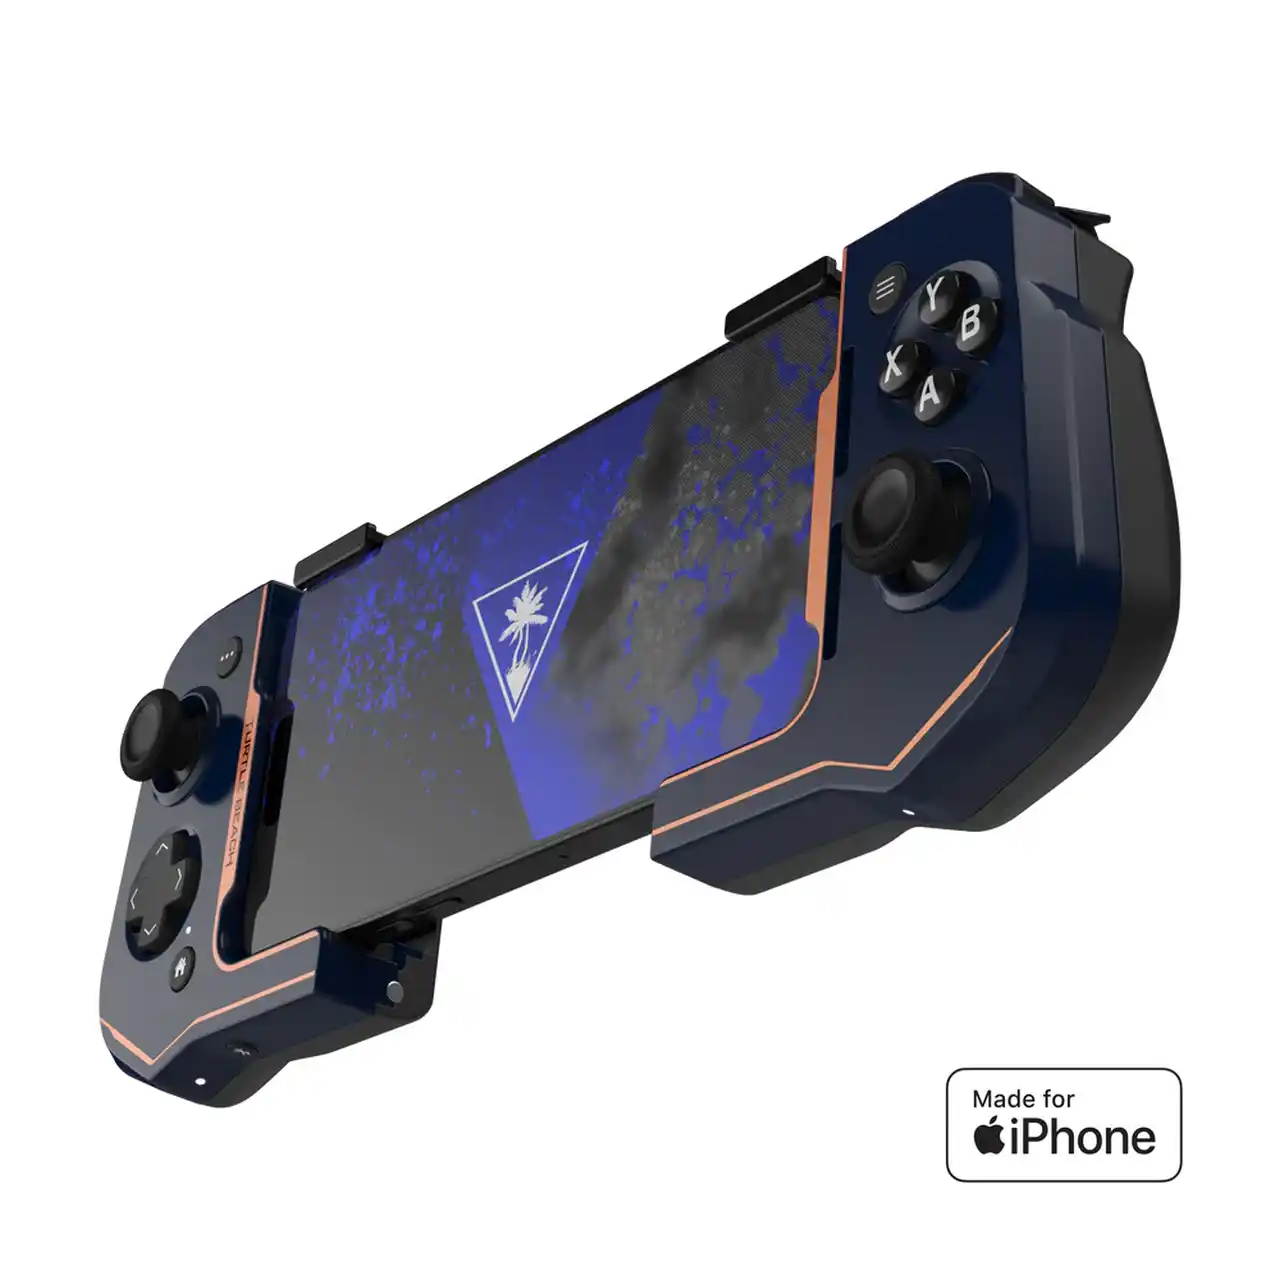 Turtle Beach Atom Mobile Game Controller per smartphone è ora disponibile anche per iPhone